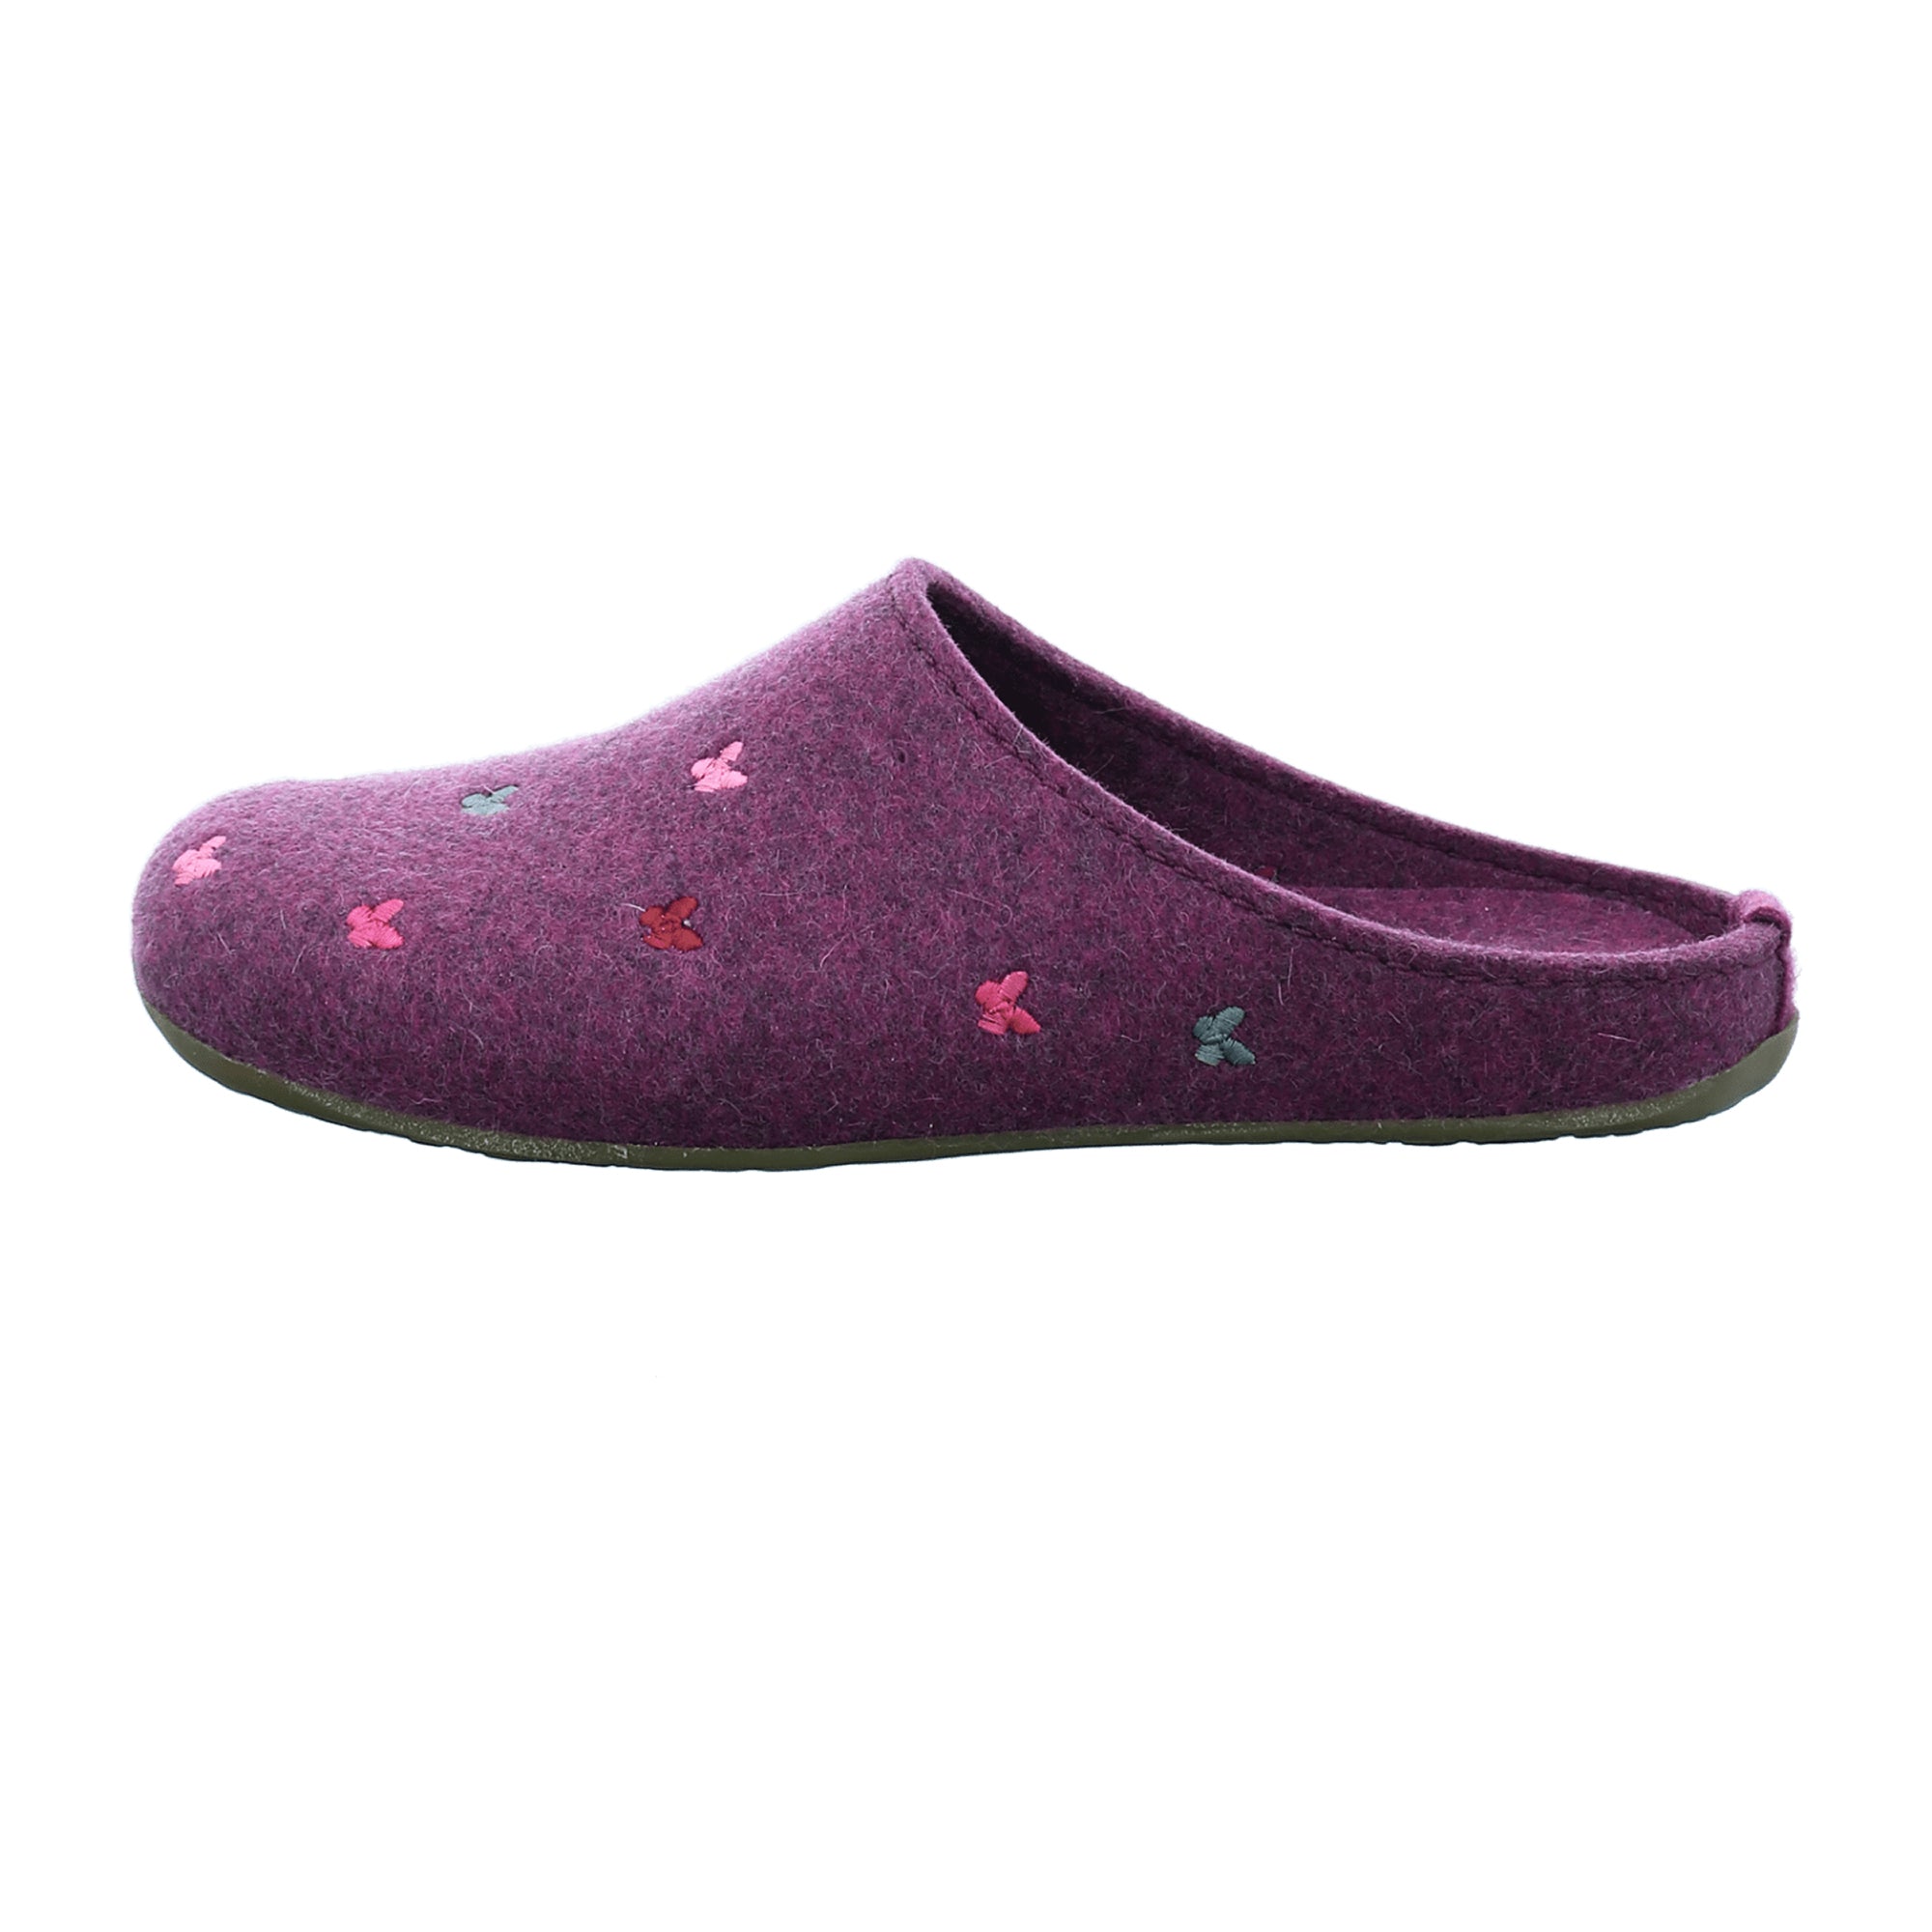 Haflinger Women's Slippers in Purple - Cozy & Stylish Footwear